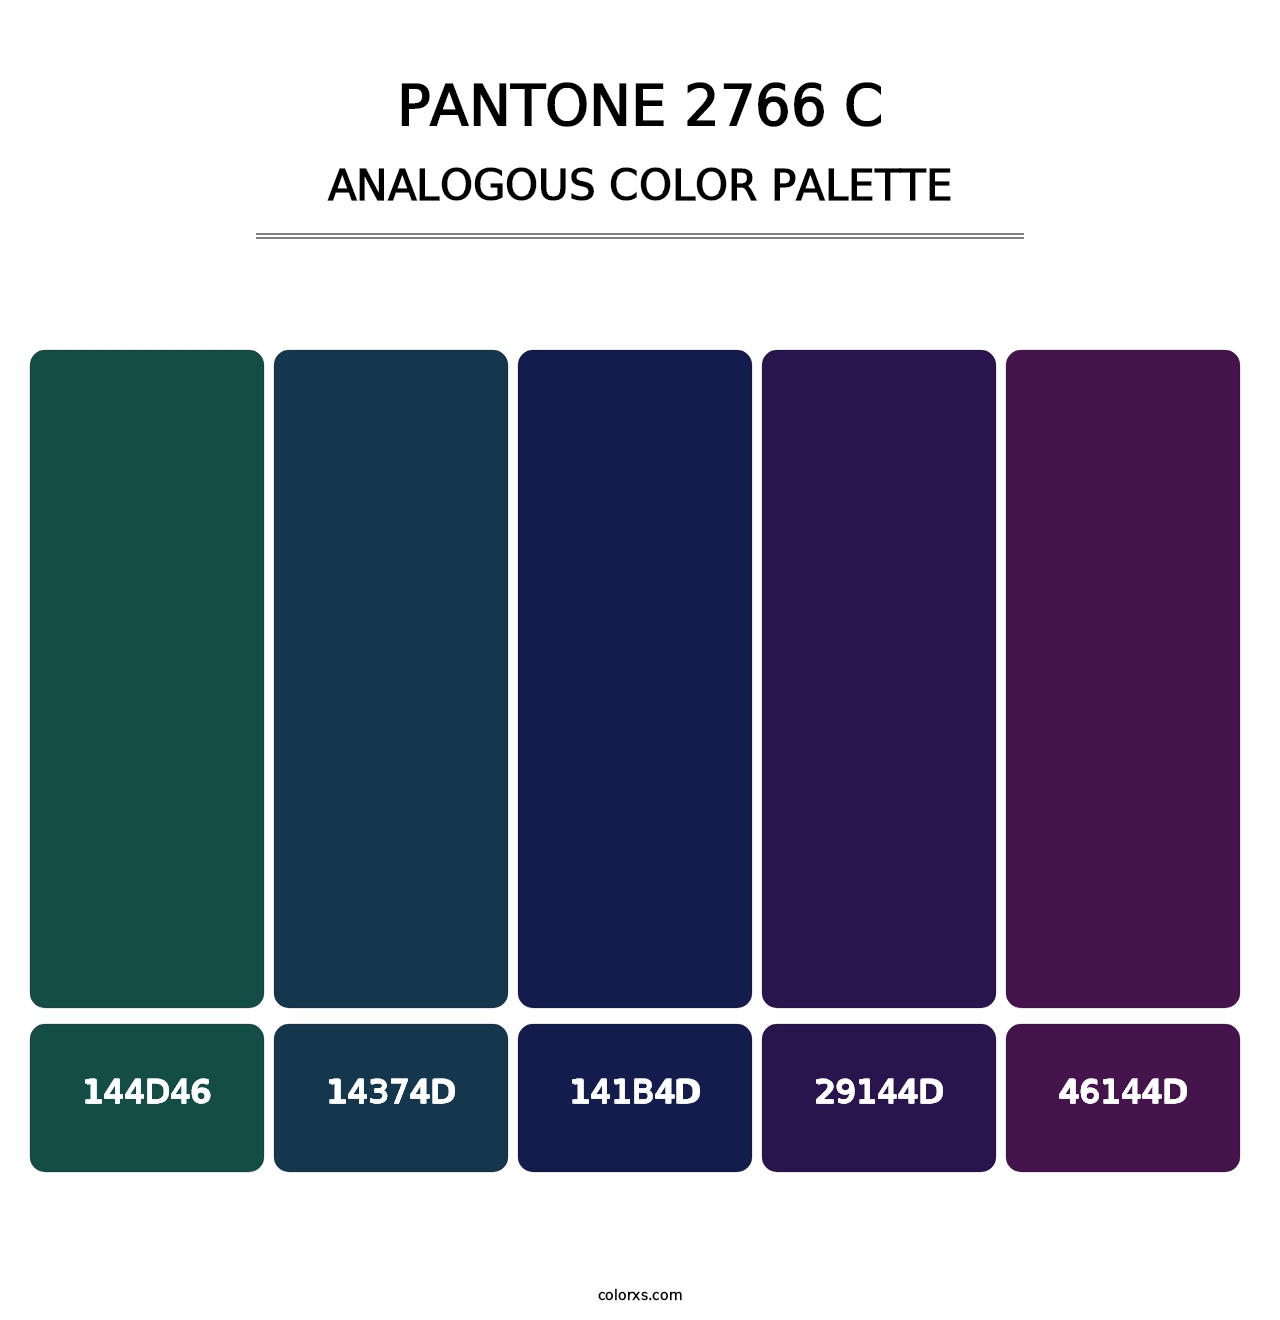 PANTONE 2766 C - Analogous Color Palette